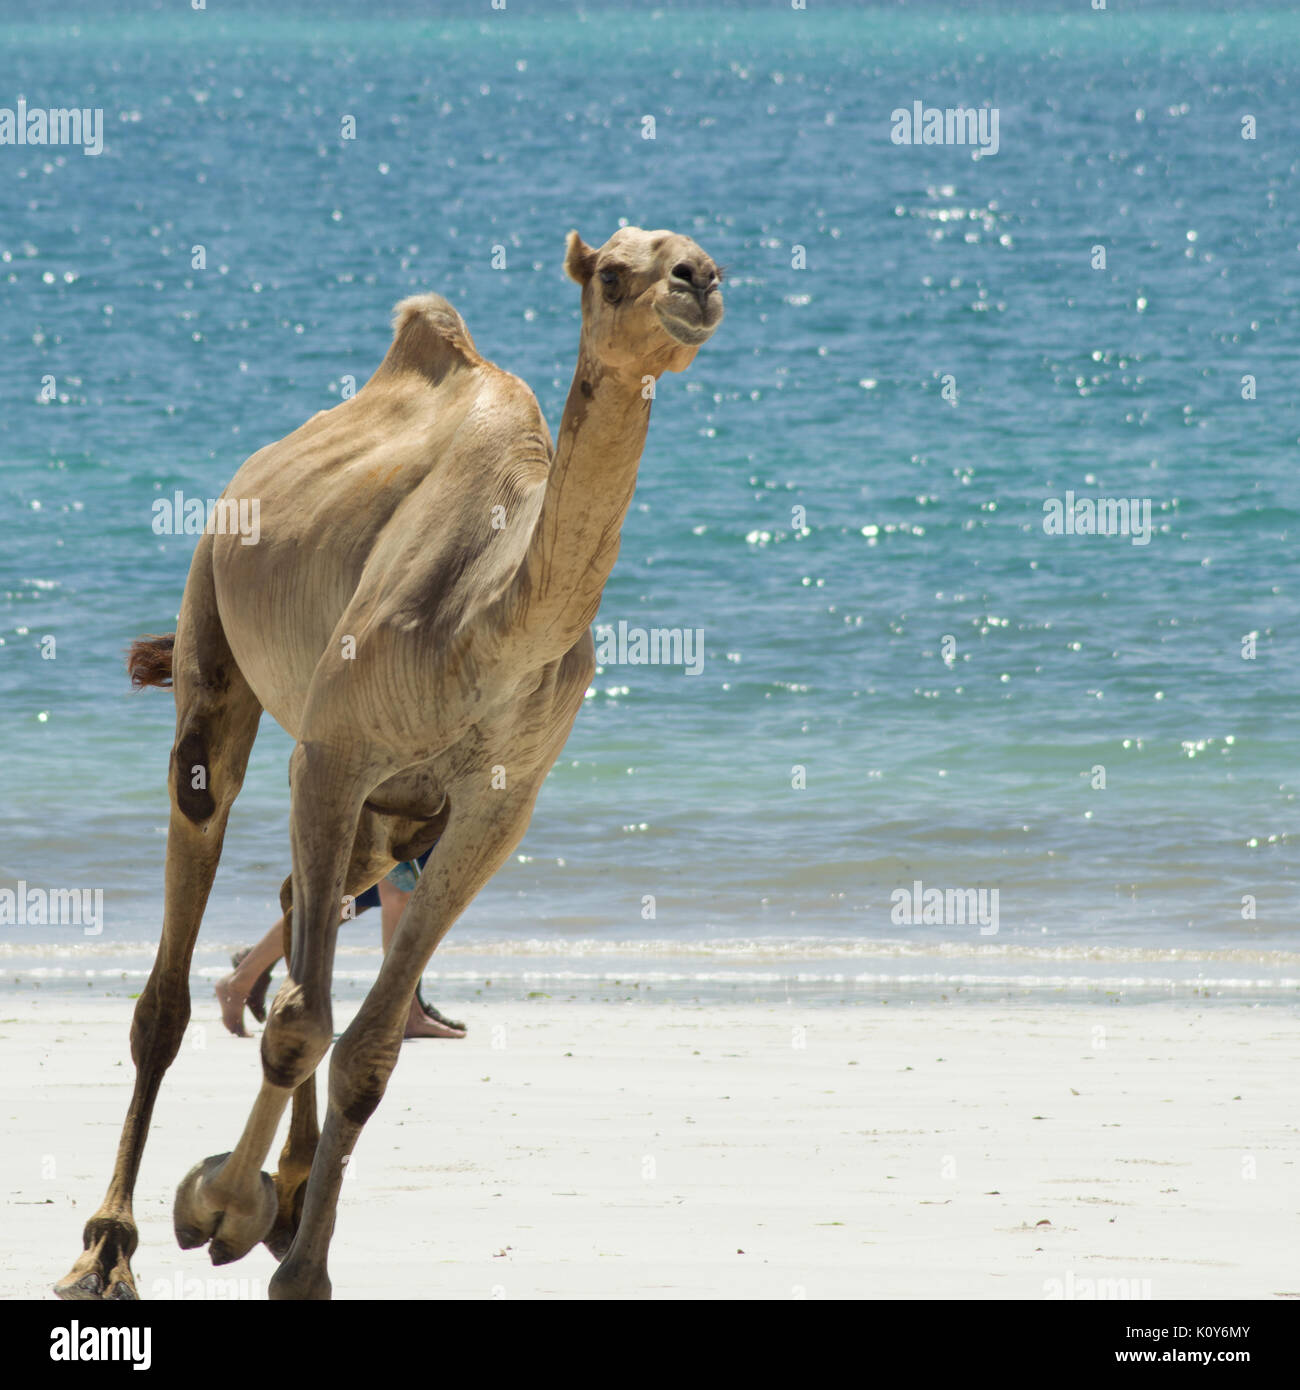 113440 Camel, desert, sunset - Rare Gallery HD Wallpapers